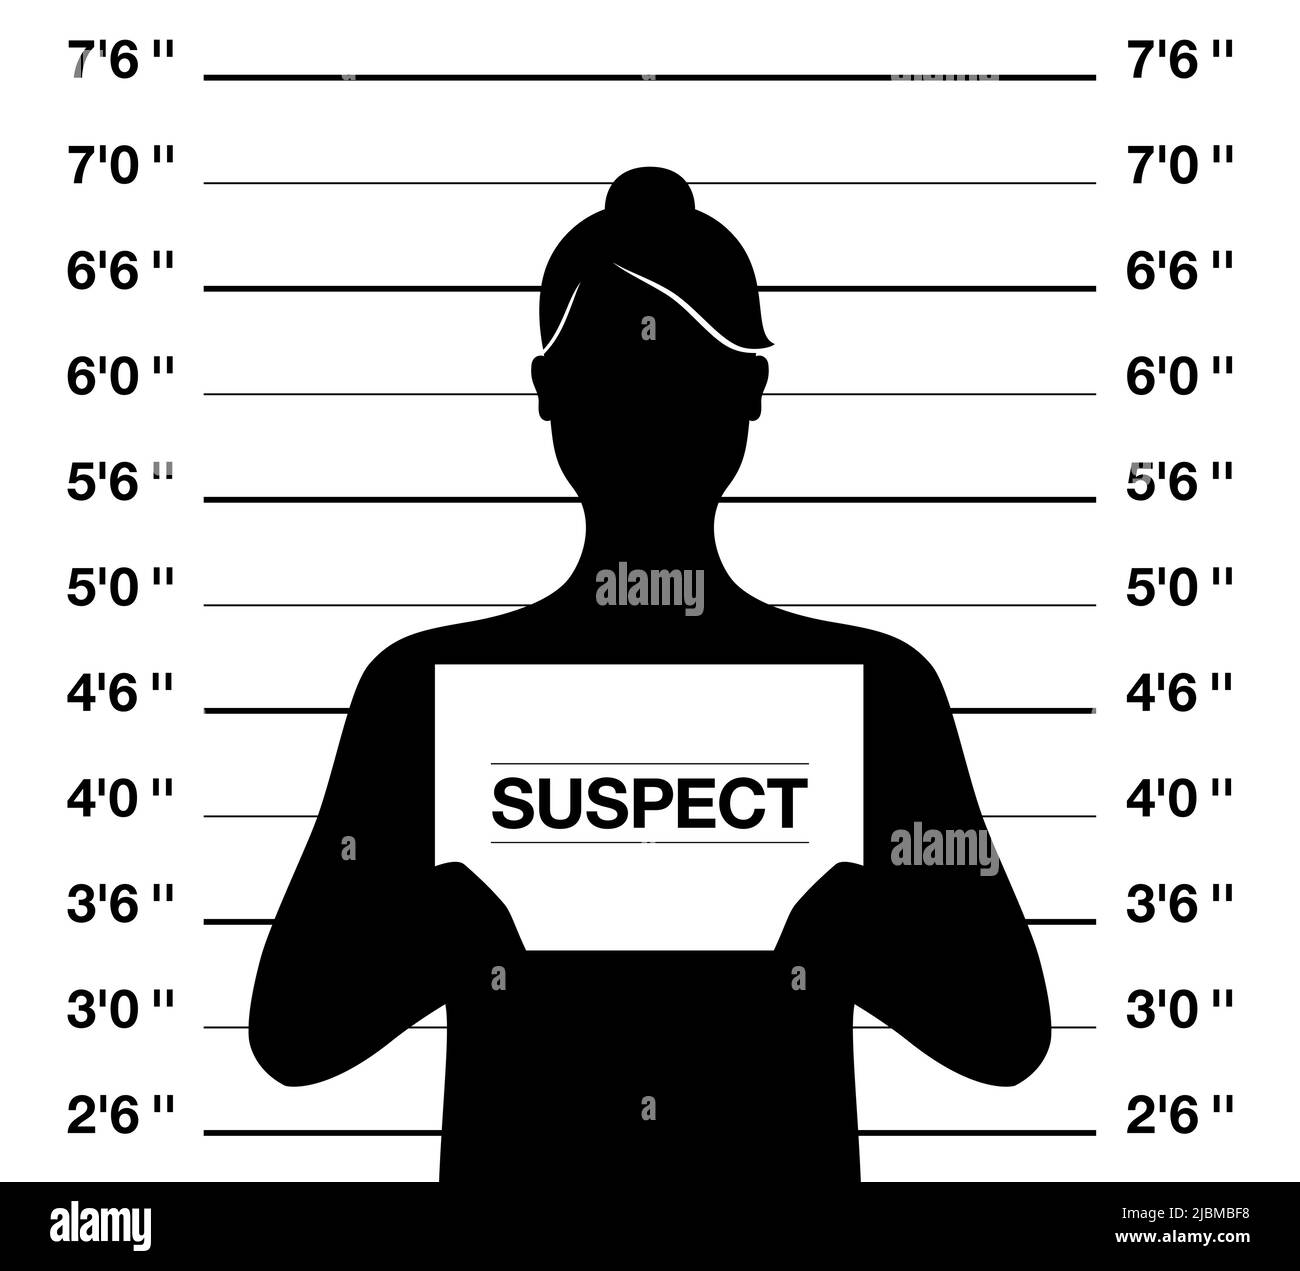 Weiblicher Suspectormugshot, Vektordarstellung. Anonymus Frau steht auf einem kriminellen Foto-Shooting Hintergrund. Stock Vektor